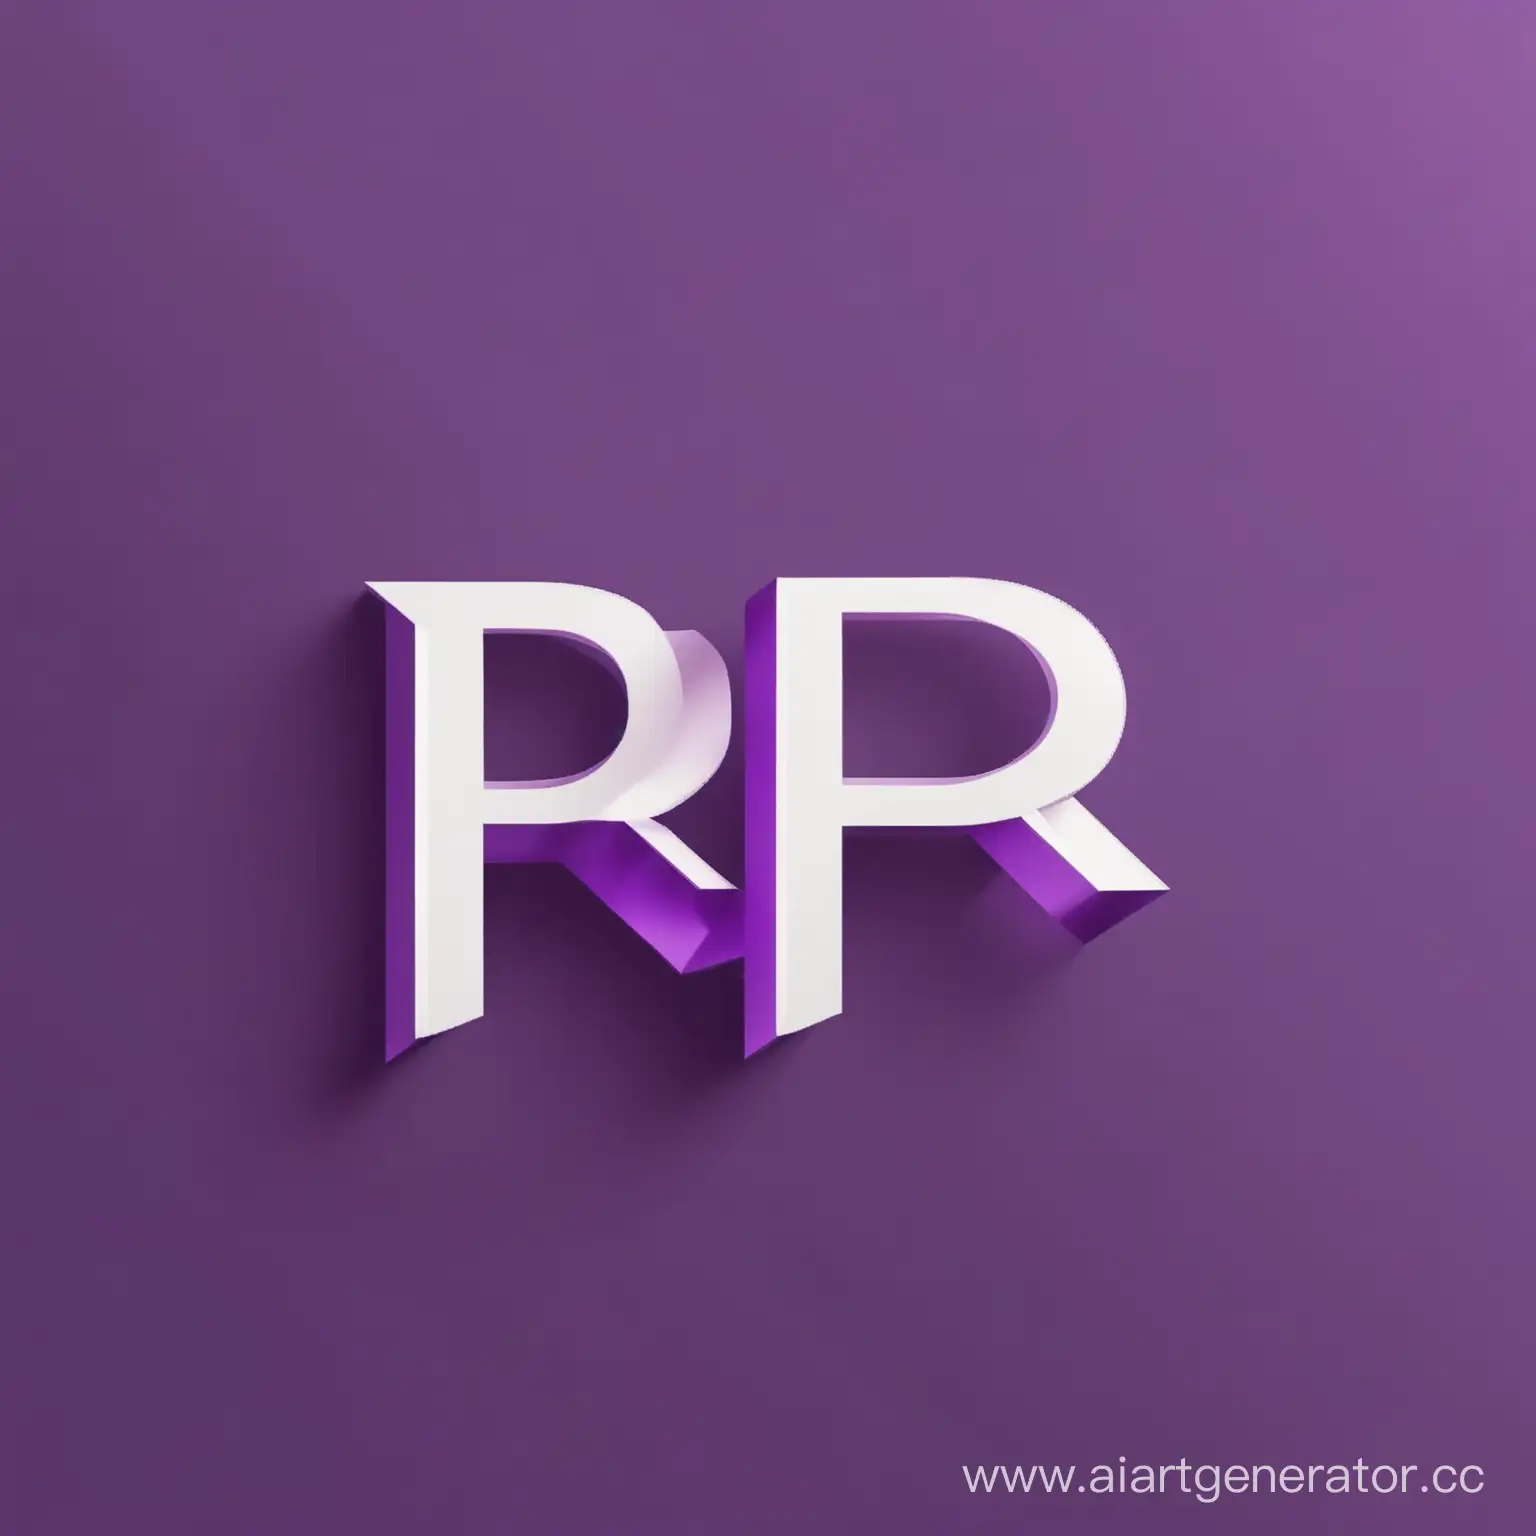 сгенерируй лого в фиолетово белом цвете с буквами RP